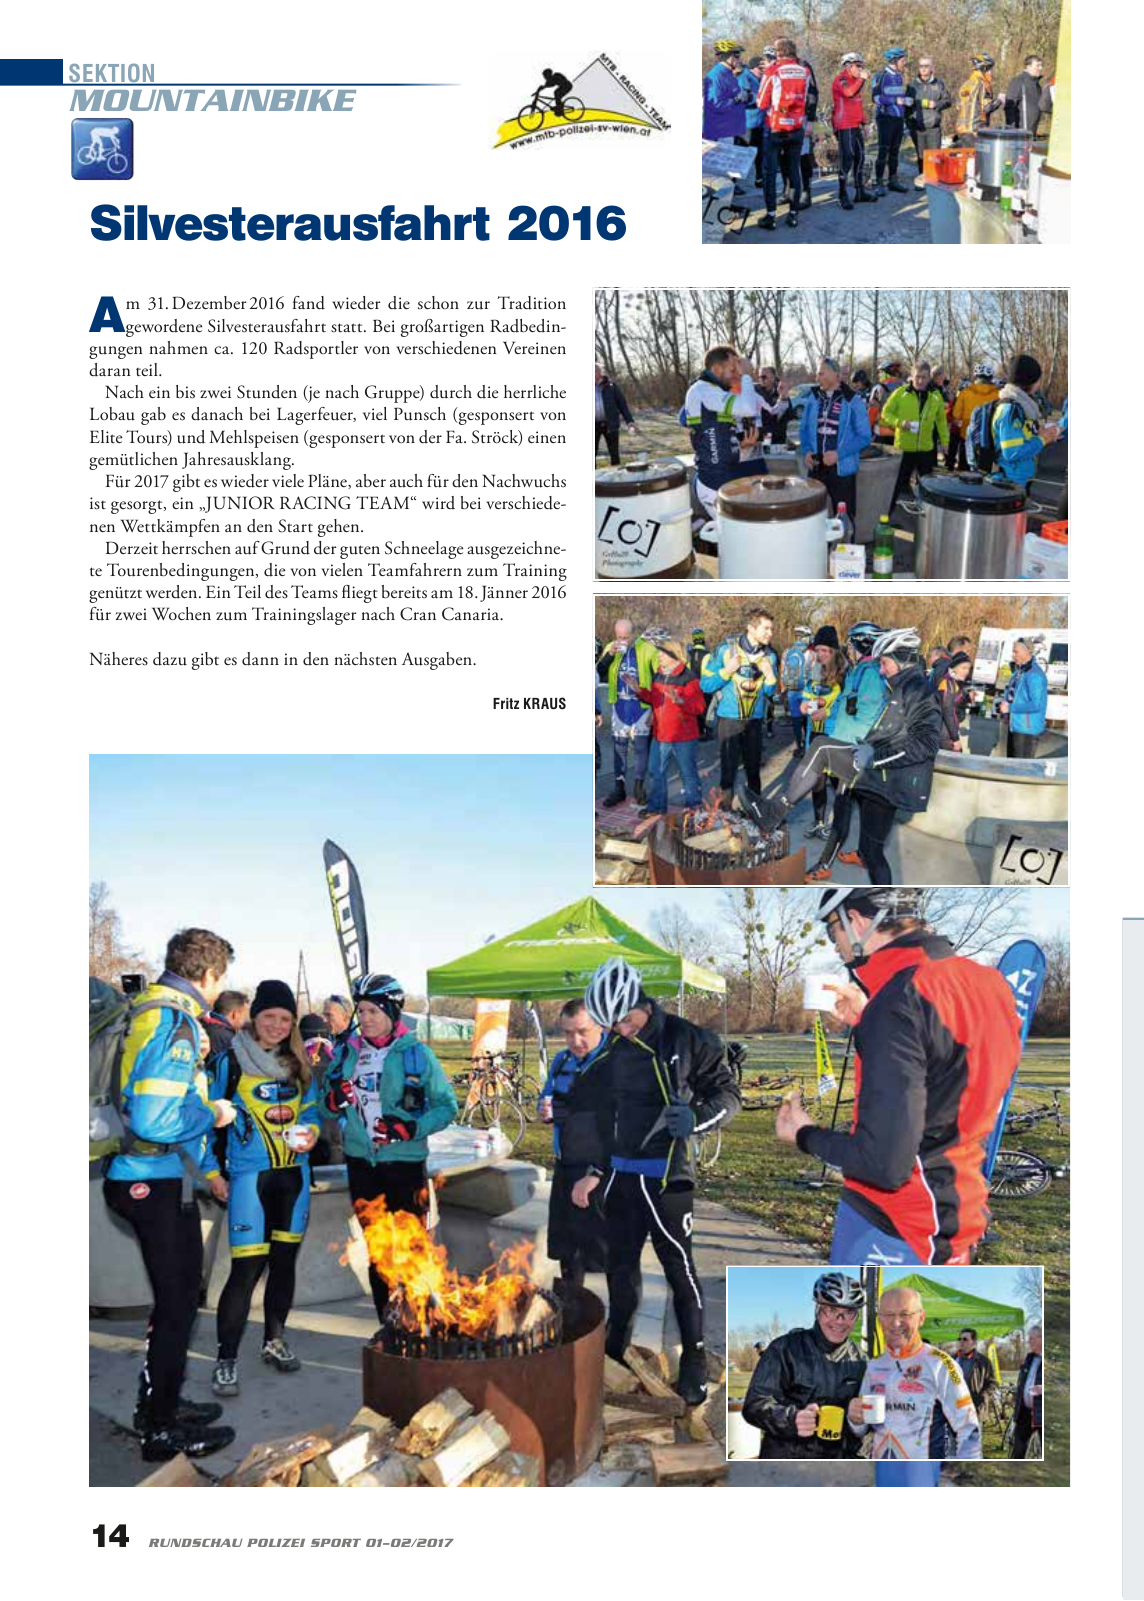 Vorschau Rundschau Polizei Sport 01-02/2017 Seite 14